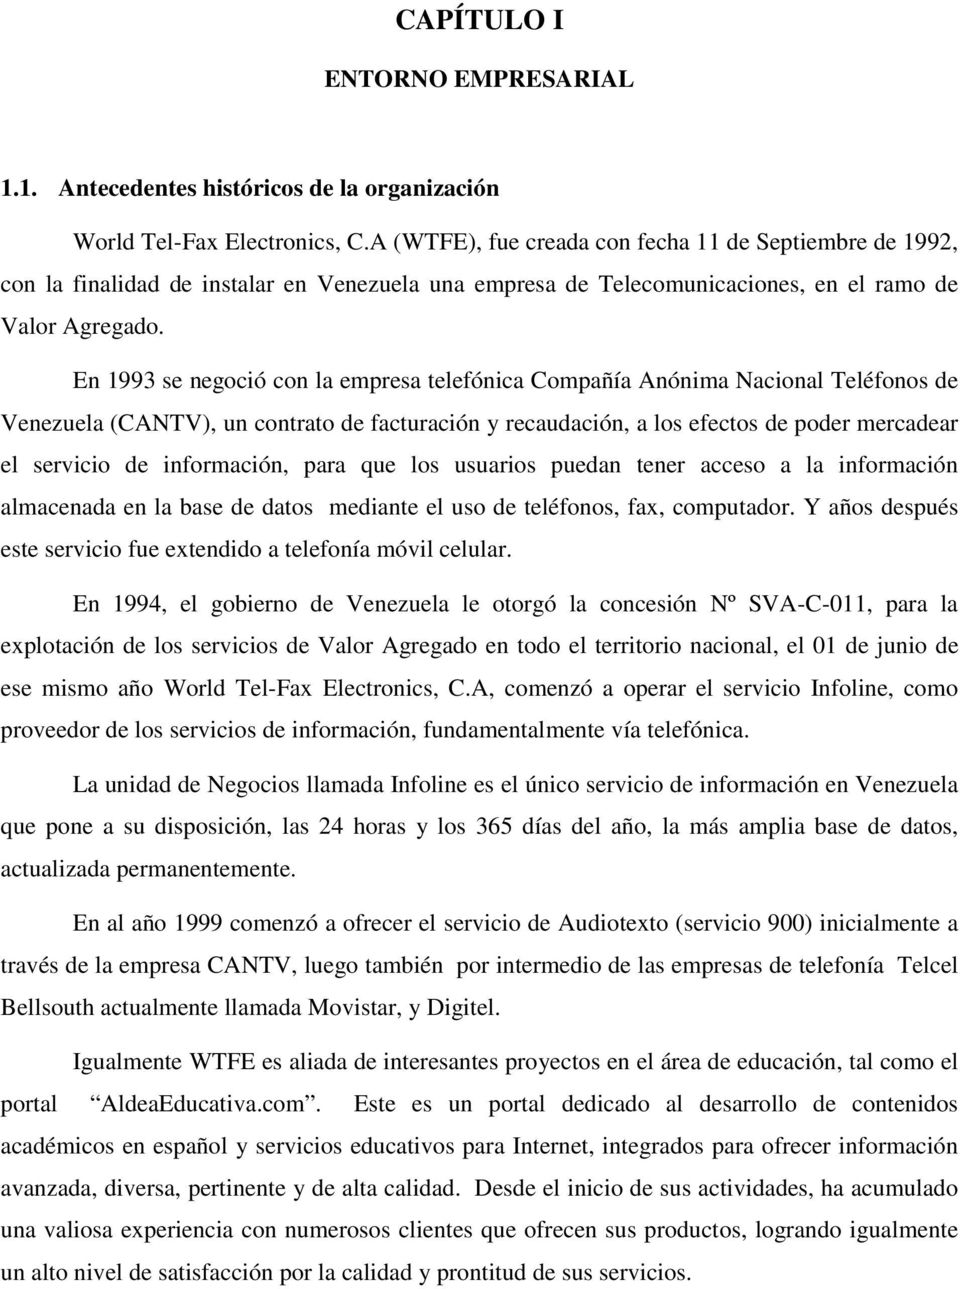 En 1993 se negoció con la empresa telefónica Compañía Anónima Nacional Teléfonos de Venezuela (CANTV), un contrato de facturación y recaudación, a los efectos de poder mercadear el servicio de